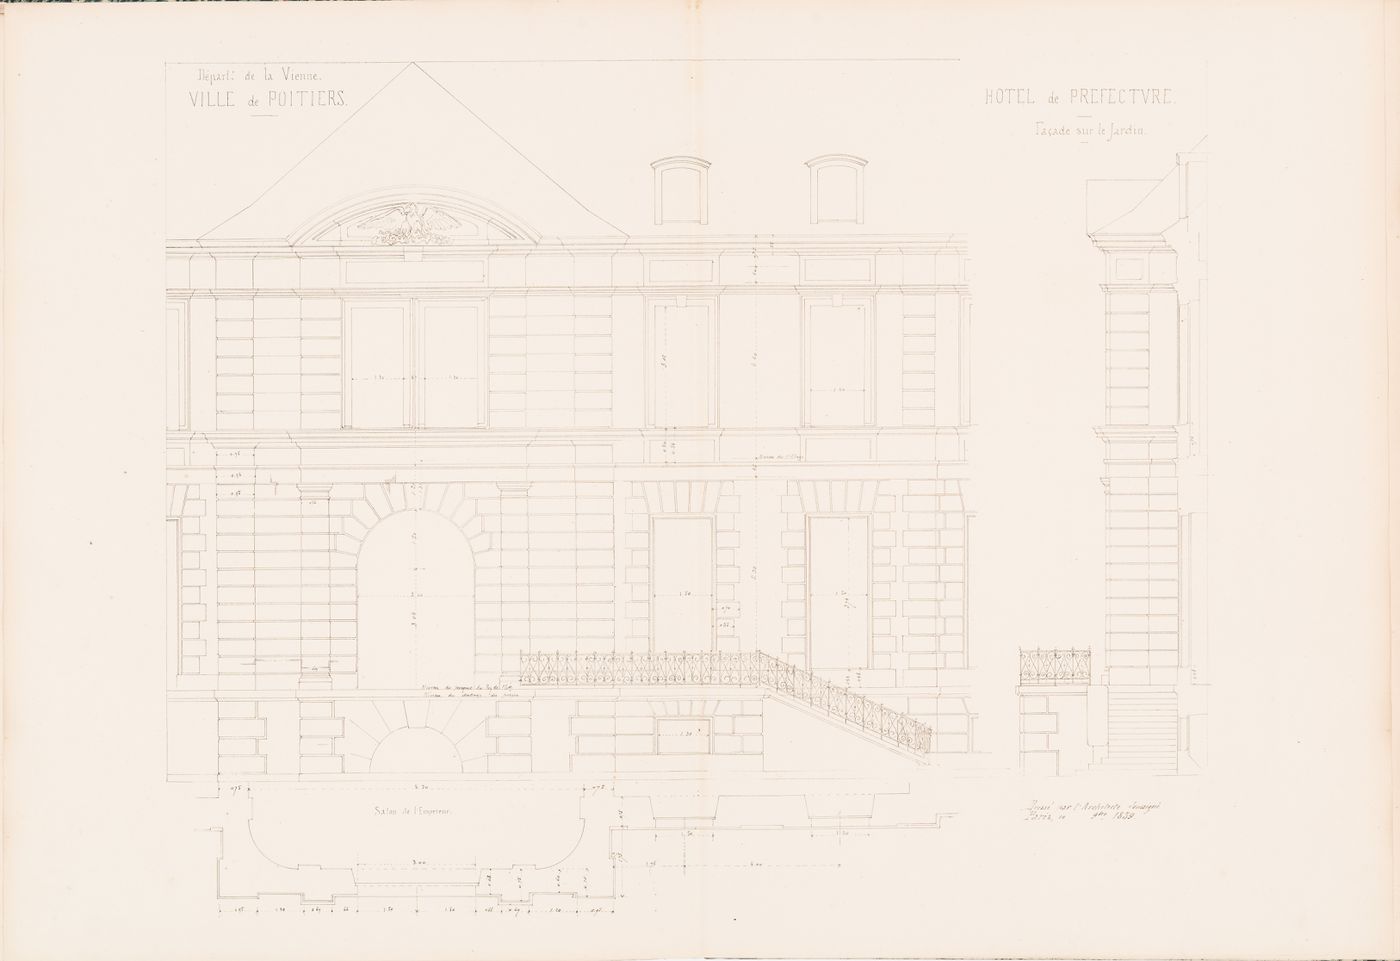 Project for a Hôtel de préfecture, Poitiers: Partial elevation, plan, and profile for the rear façade for the Hôtel du Préfet